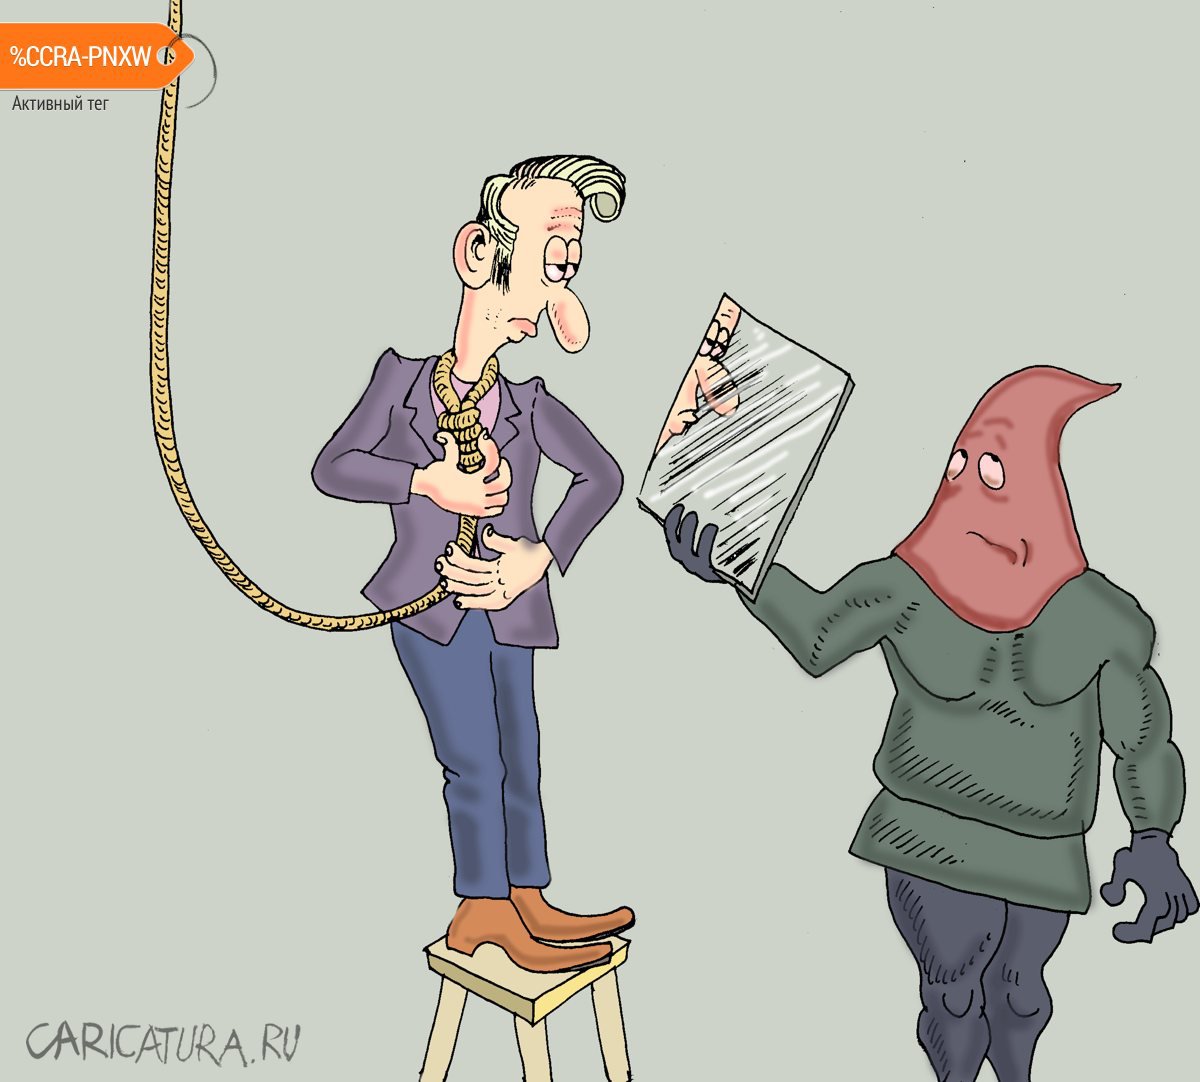 Карикатура "Казнь пижона", Булат Ирсаев